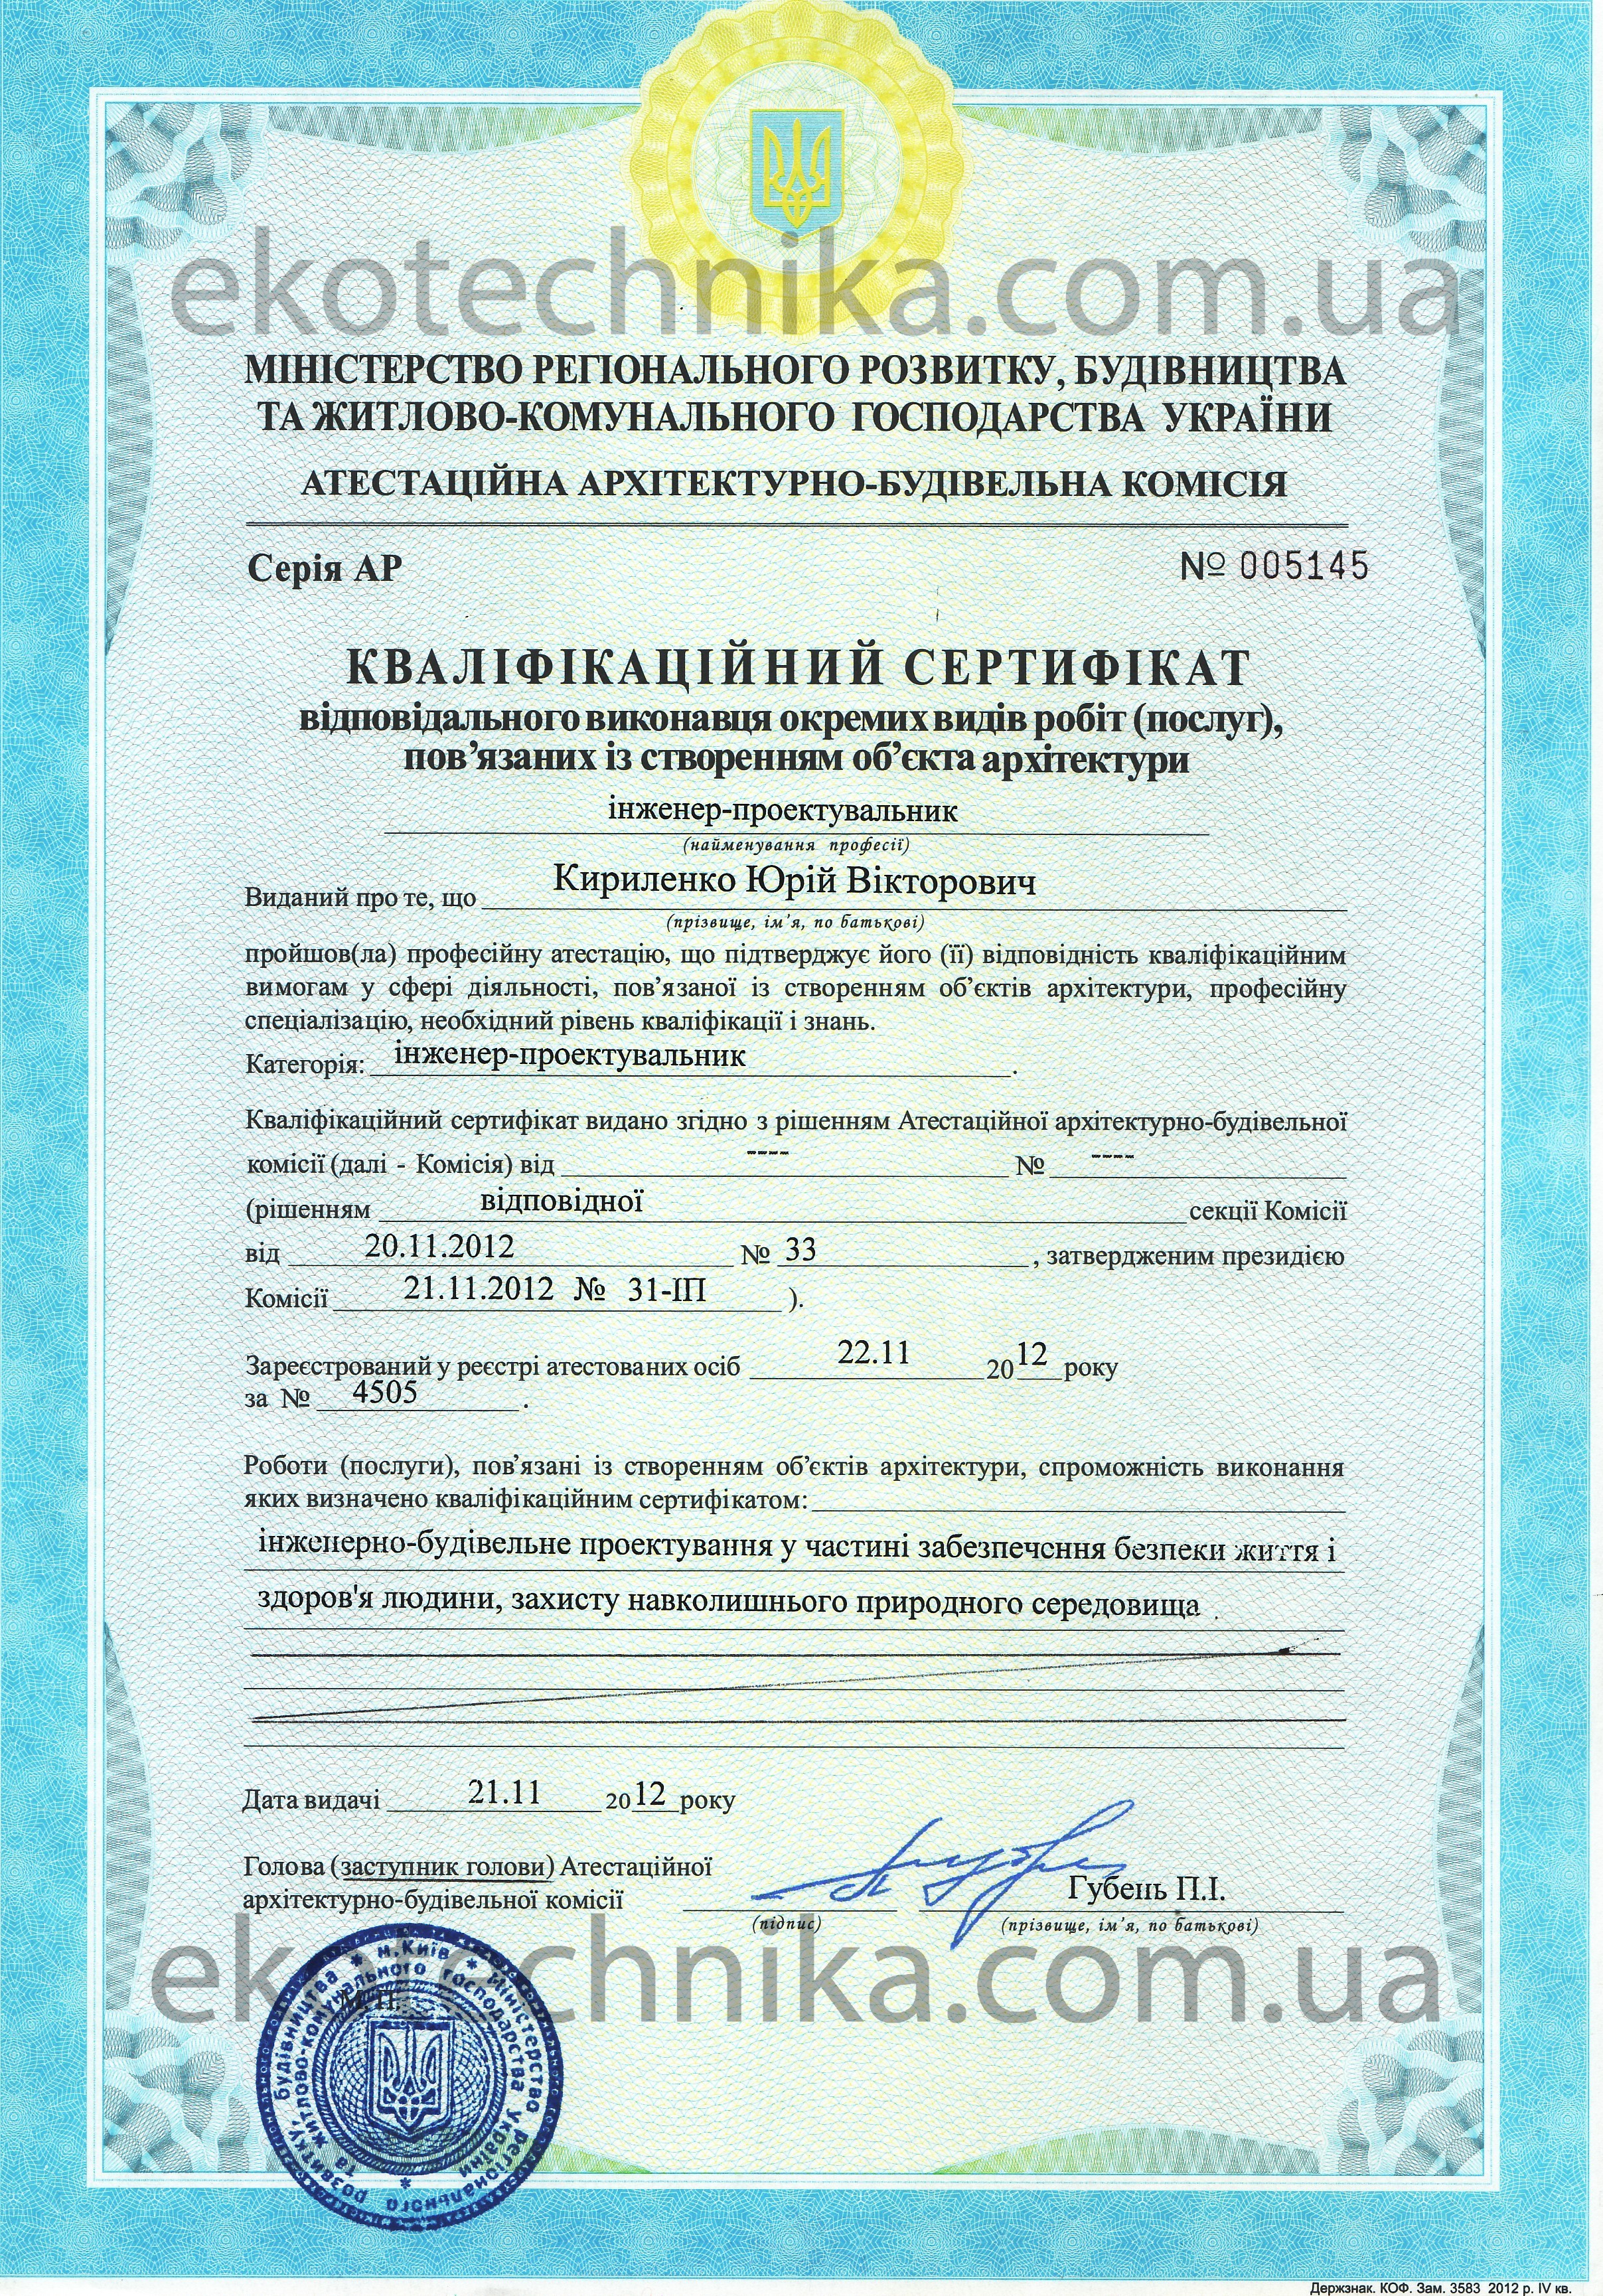 Сертифікат експерта з окремих видів робіт із створення об'єктів архітектури